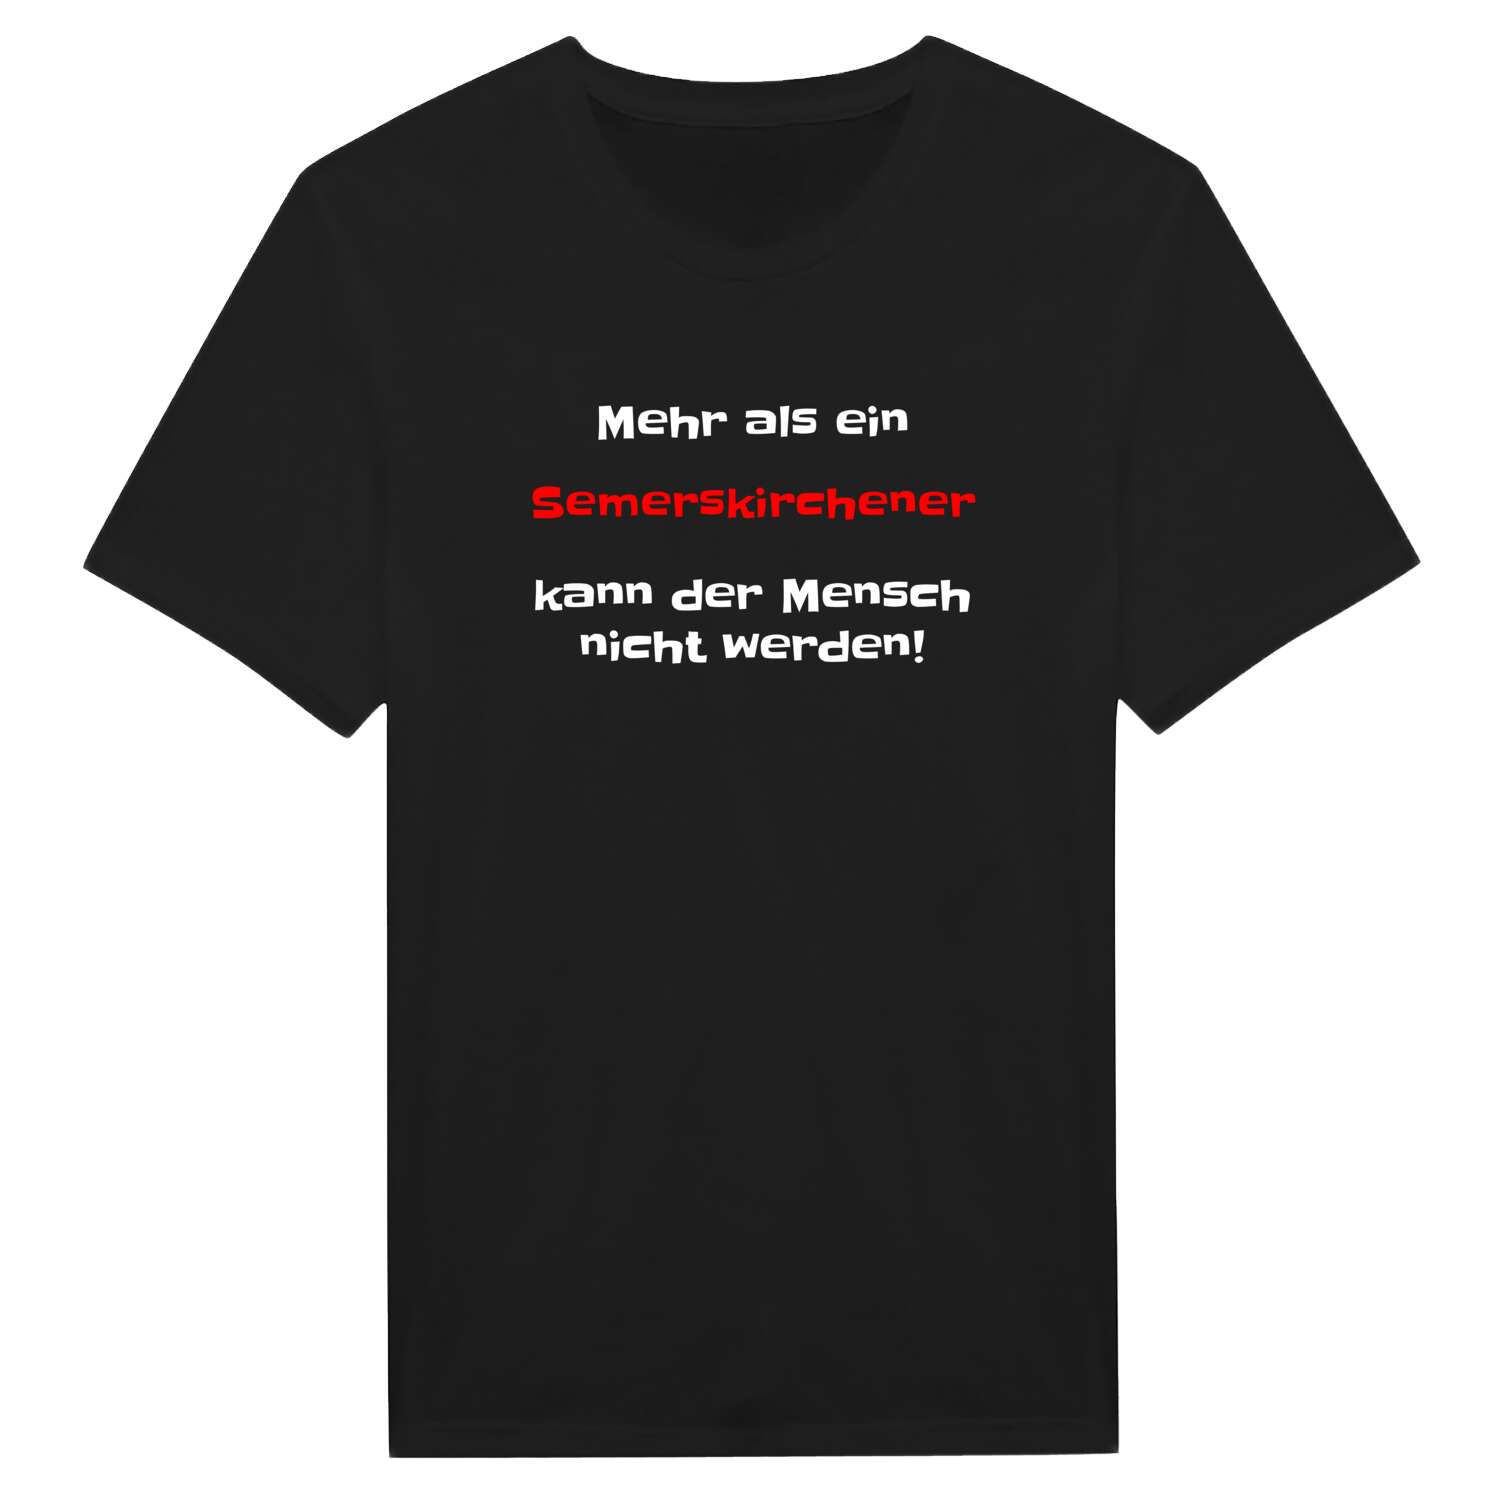 Semerskirchen T-Shirt »Mehr als ein«